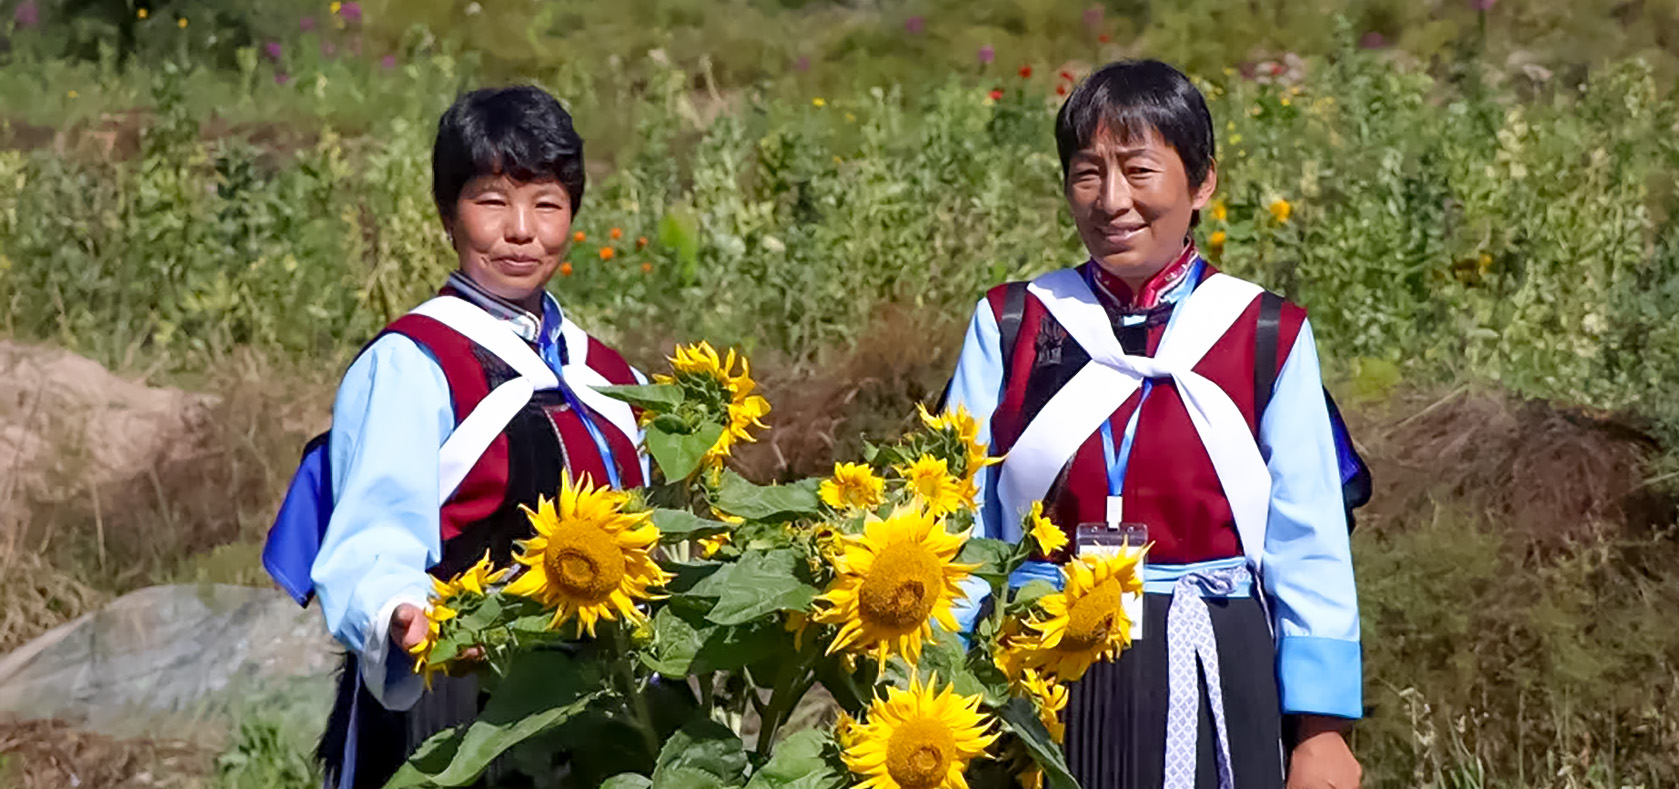 UN Women China Qinghai programme beneficiaries. 
Photo: UN Women/Zhao Wenting